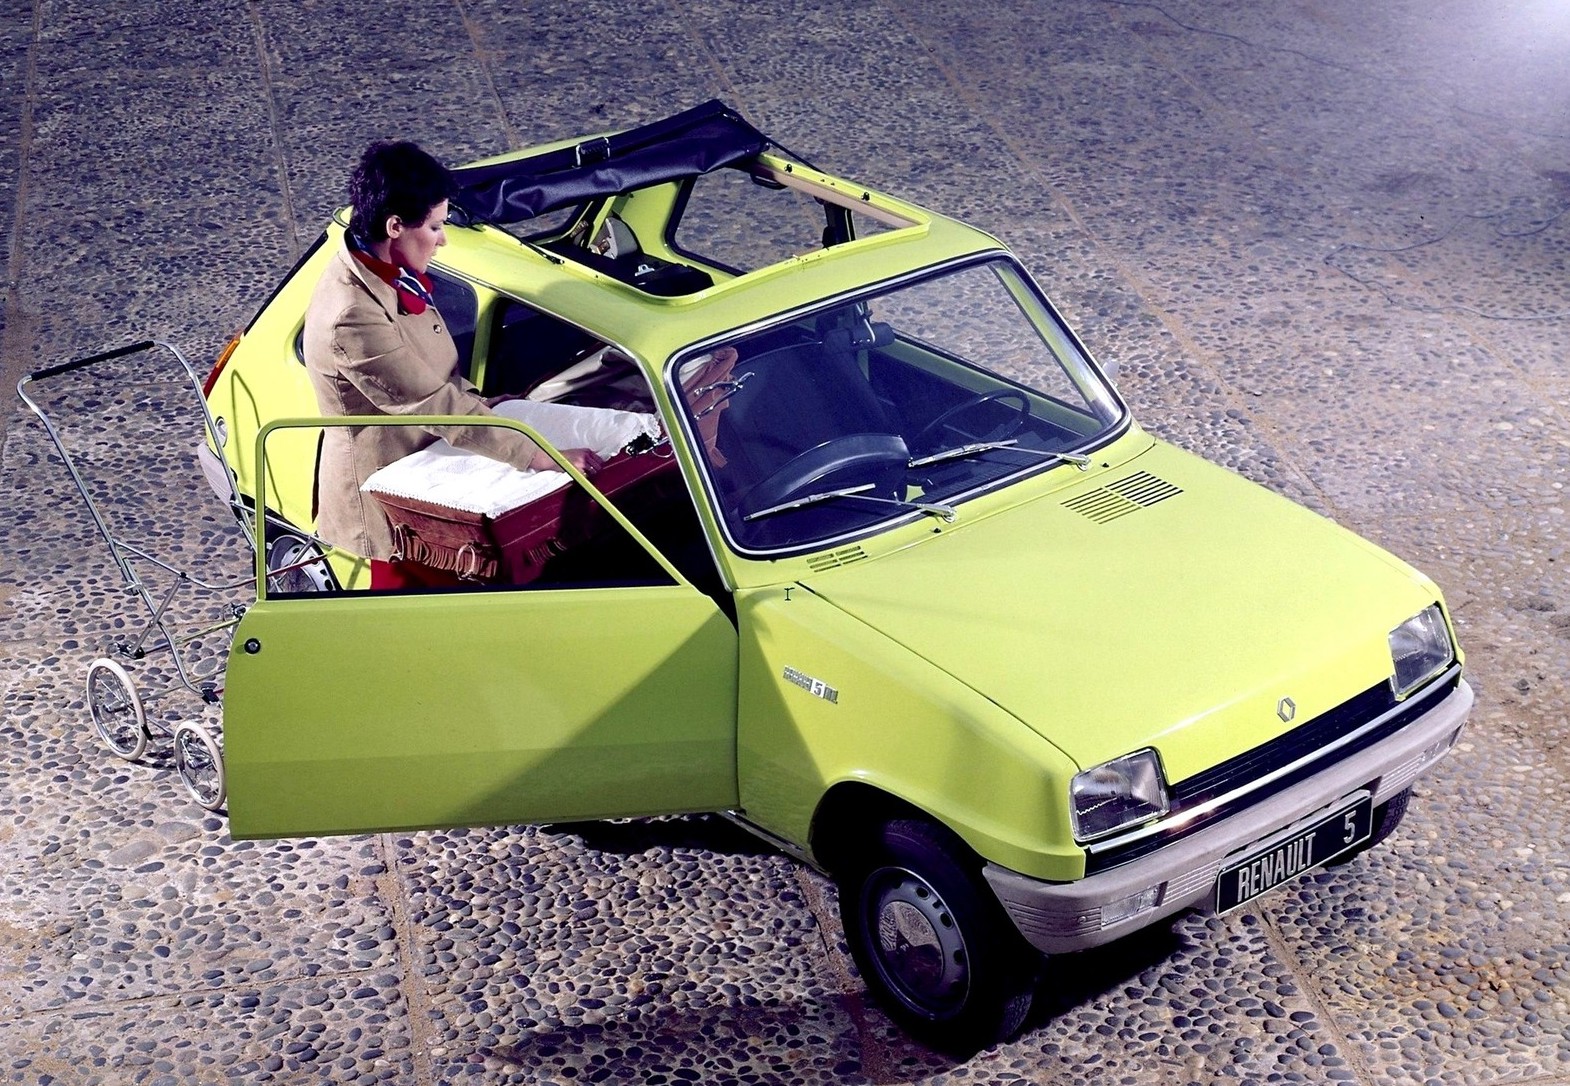 Renault 5 TL classic compact car